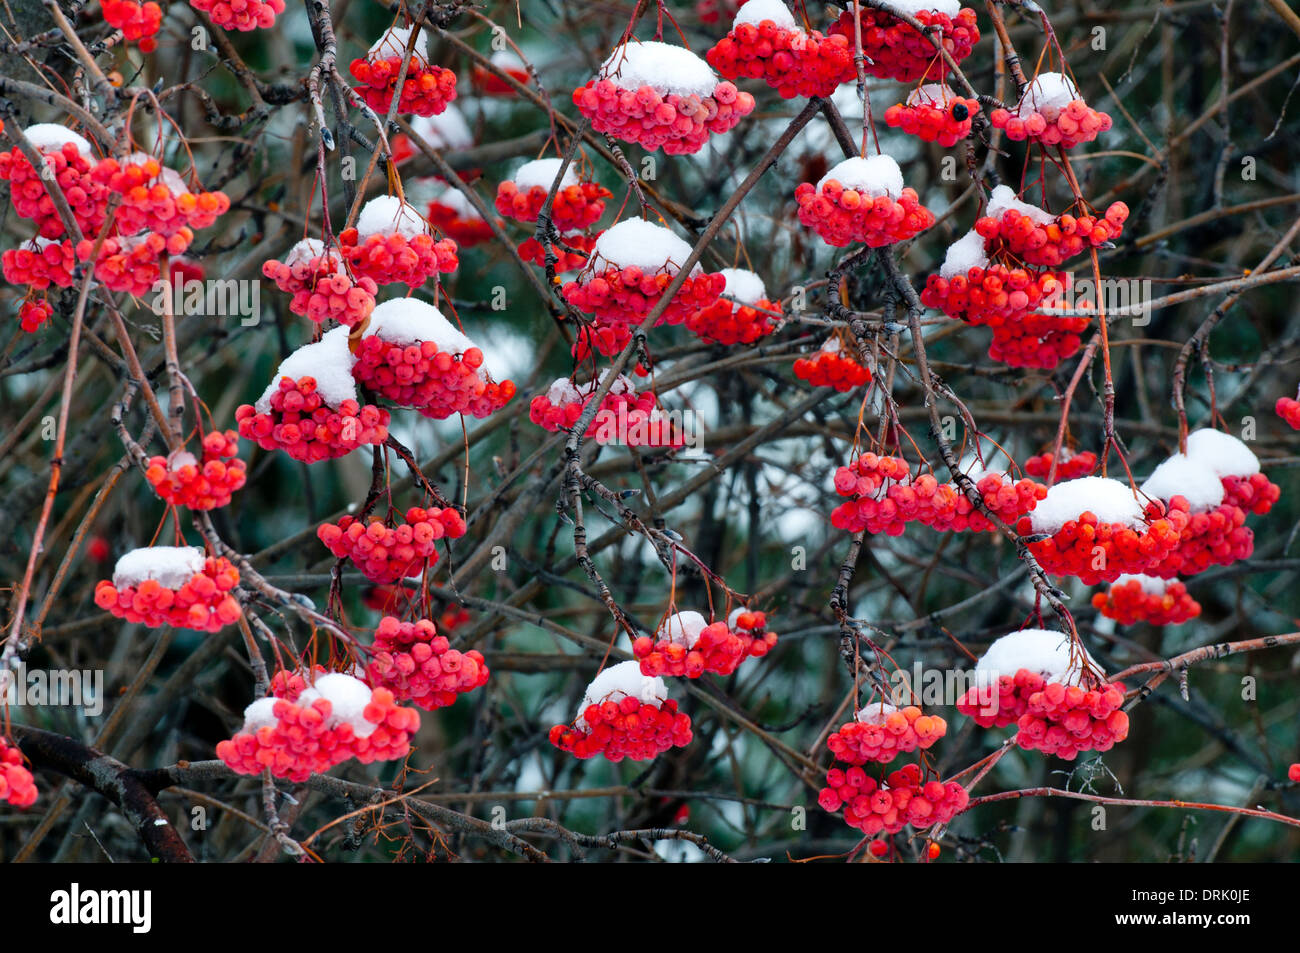 Snow on mountain ash berries in Boise Idaho USA Stock Photo